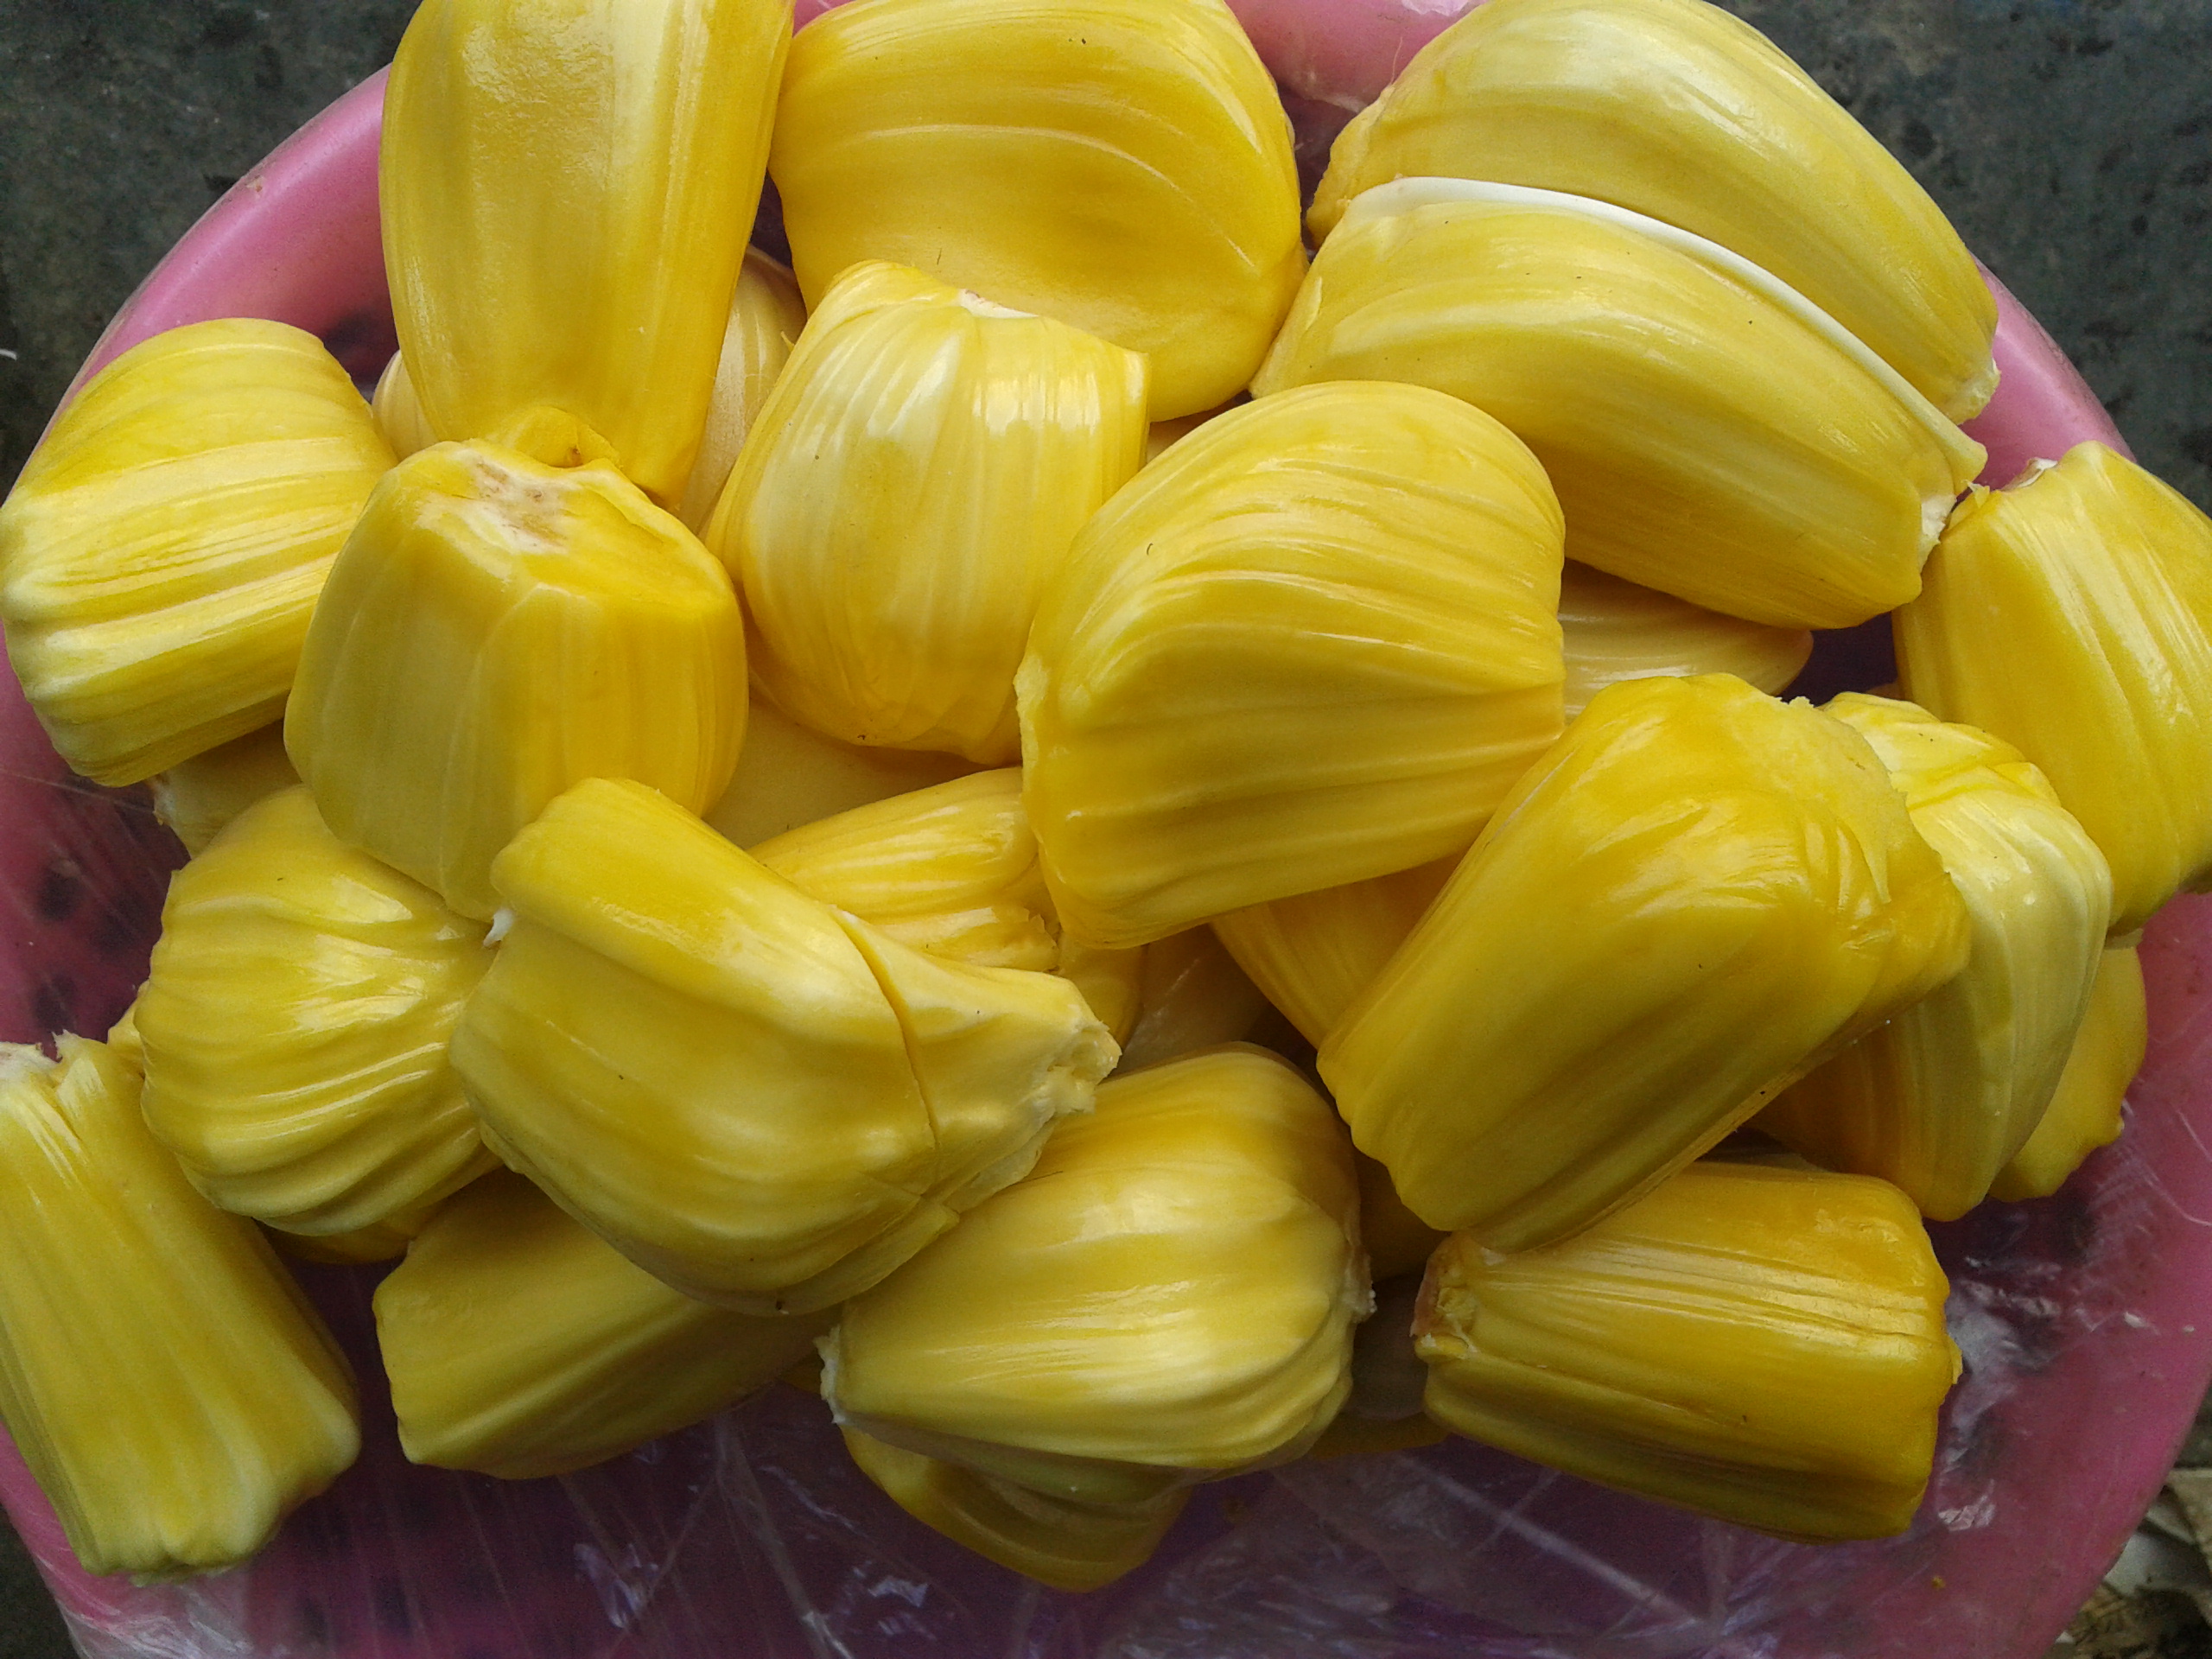 文丁大颗粒J32菠萝蜜 长期外销香港市场 - 农牧世界